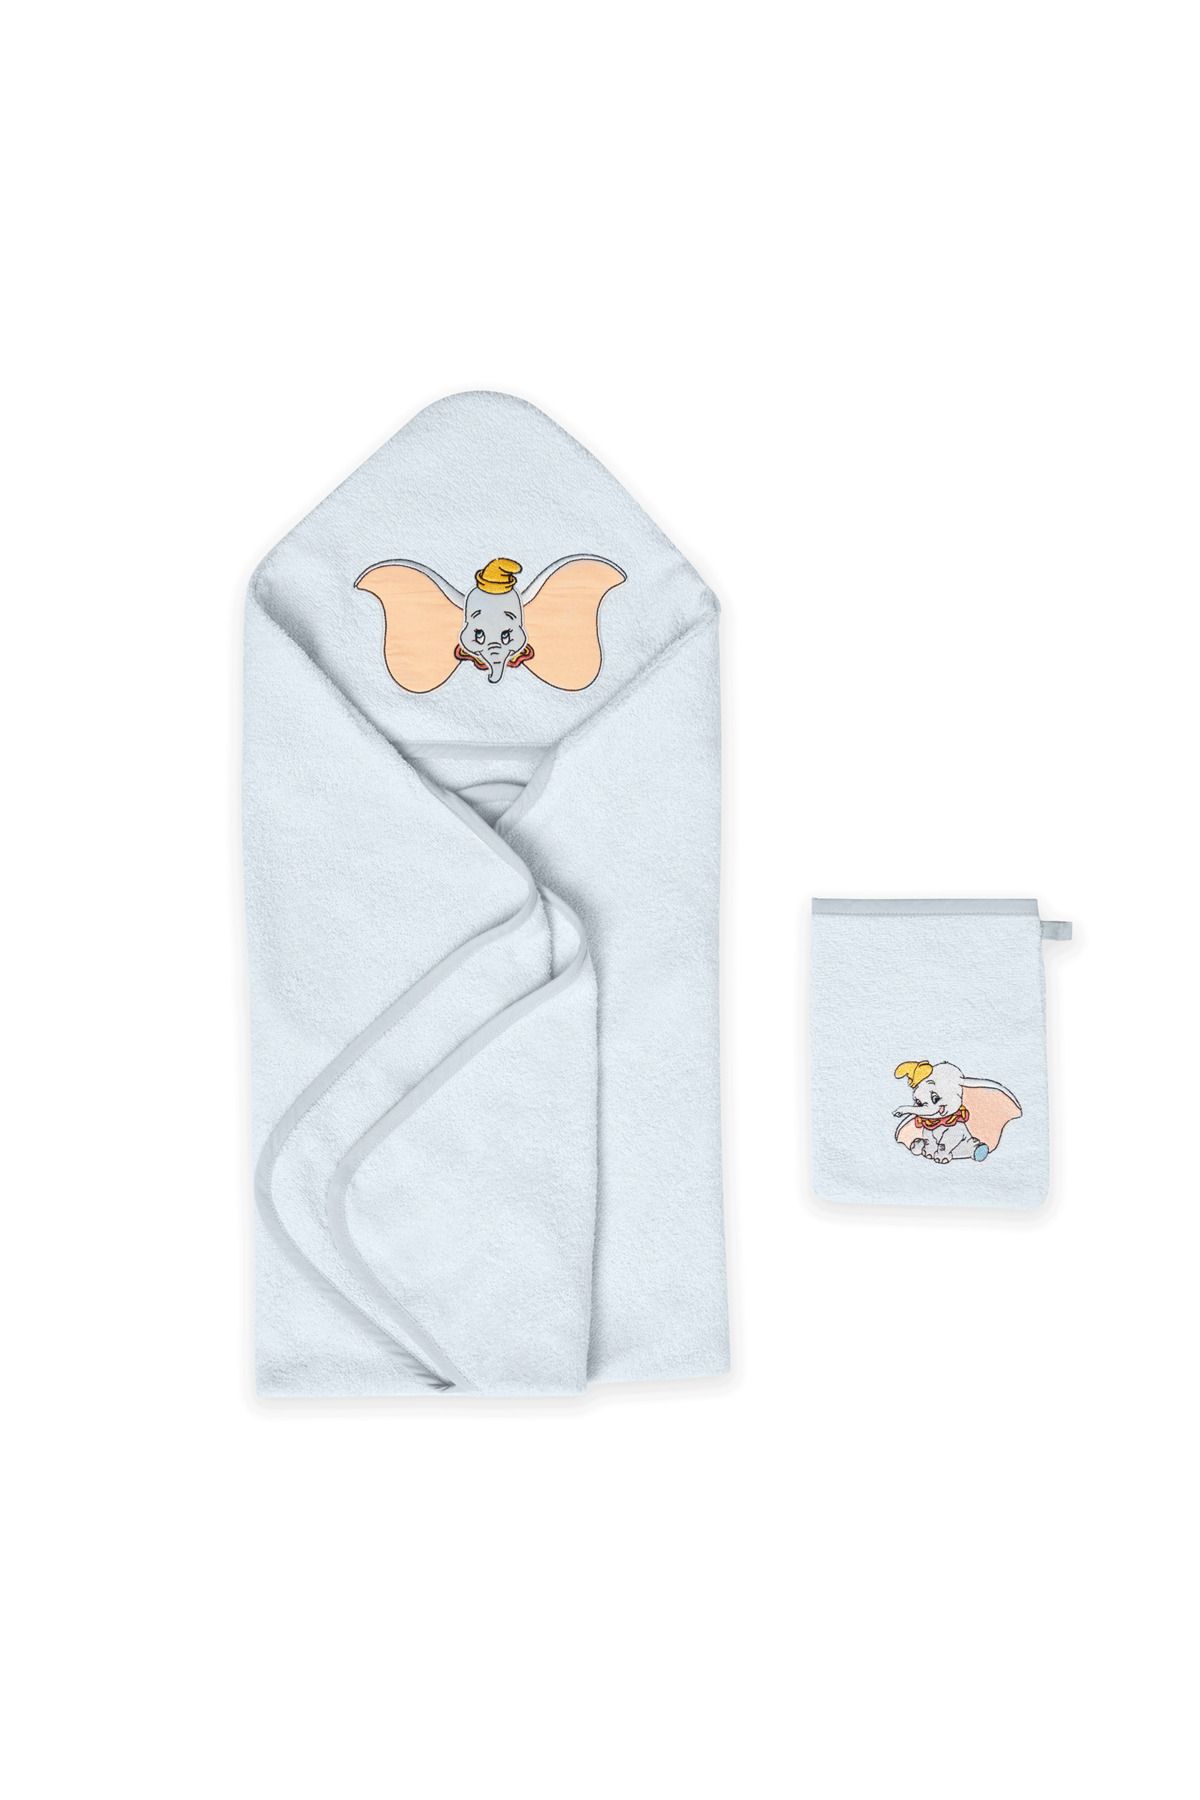 Лицензированный Taç комплект полотенец с капюшоном и хлопковым мешочком Disney Dumbo Baby 000000001500217829